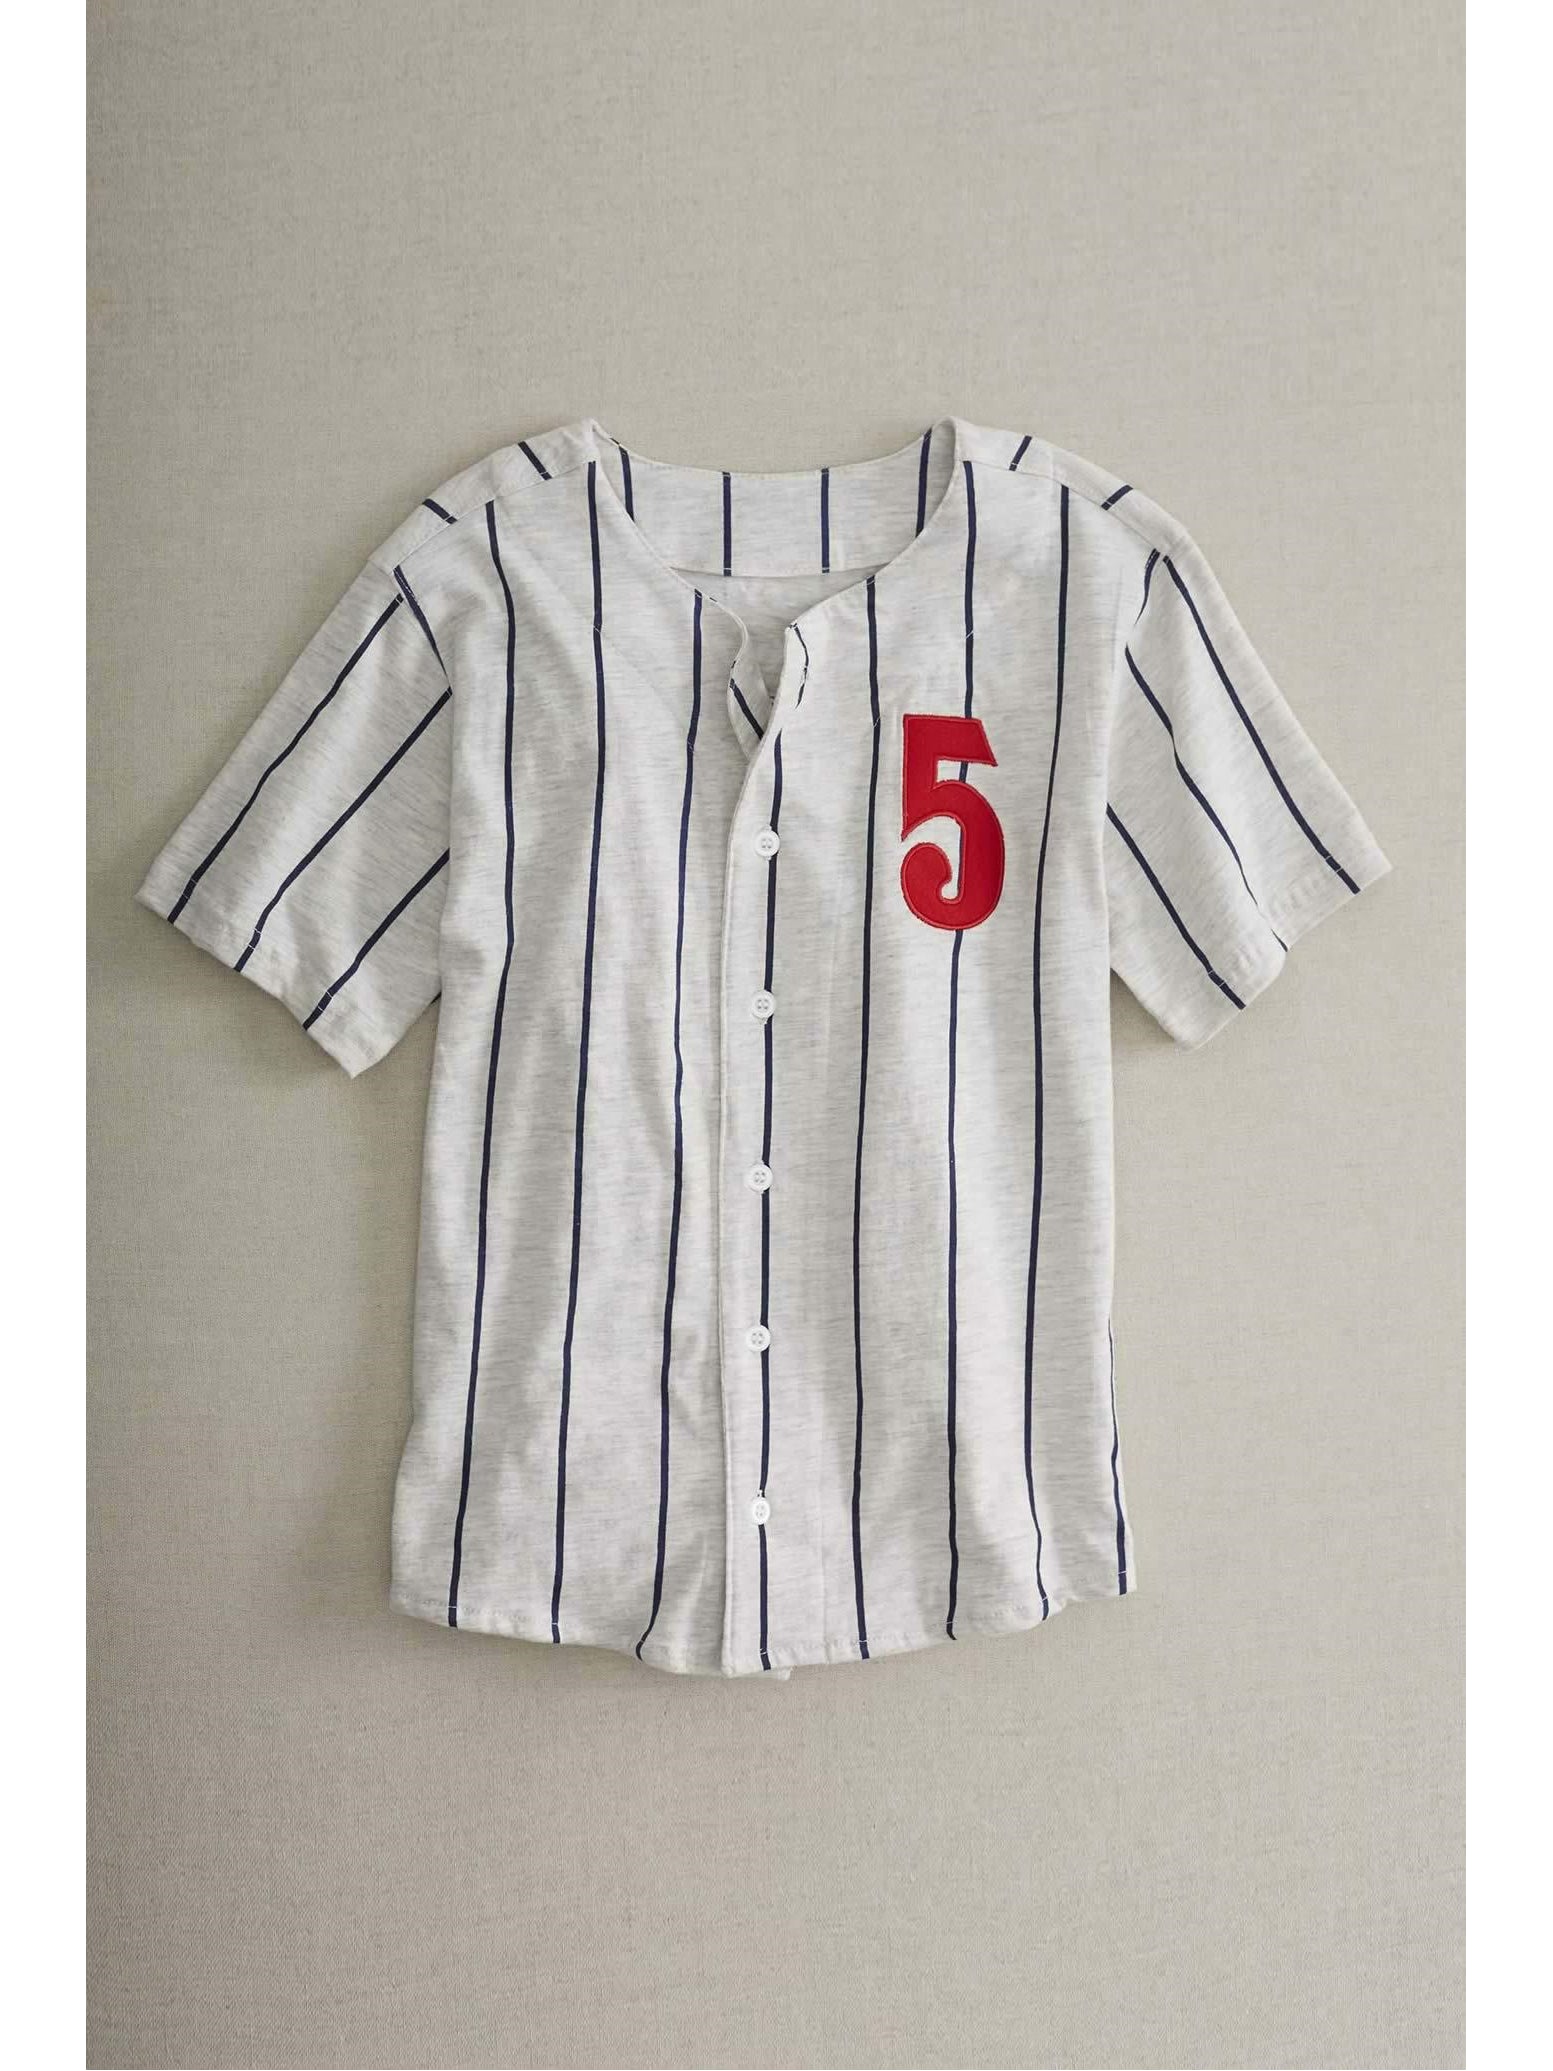 baseball uniform for kids